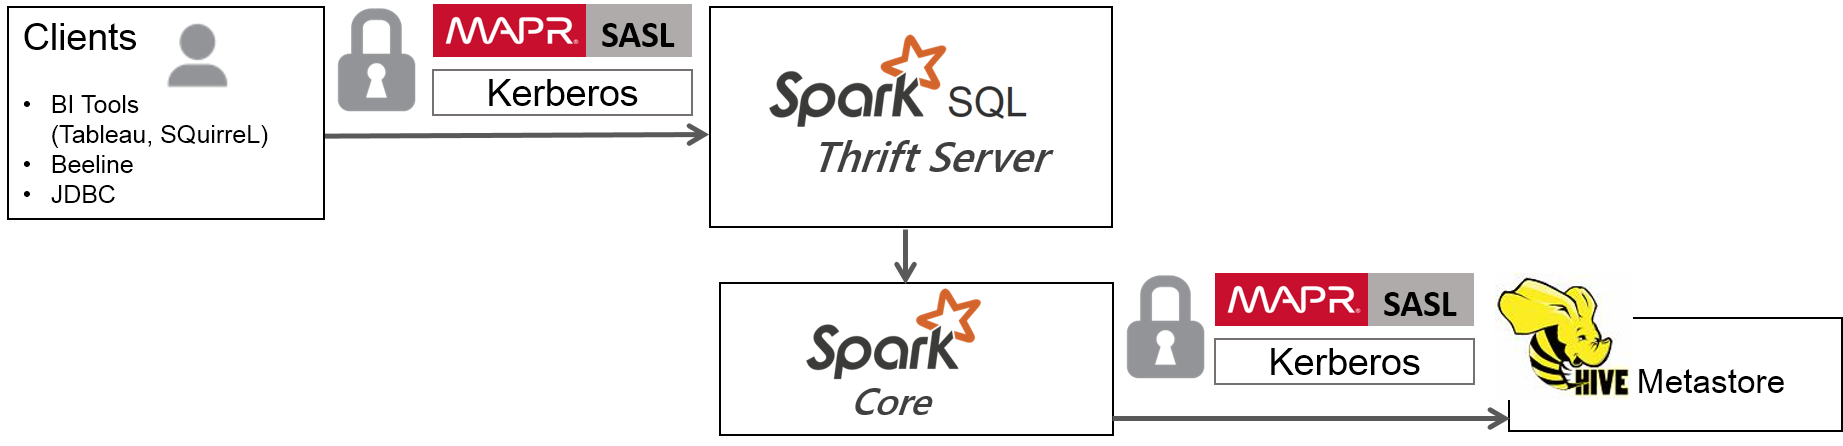 Spark SQL Thrift Server